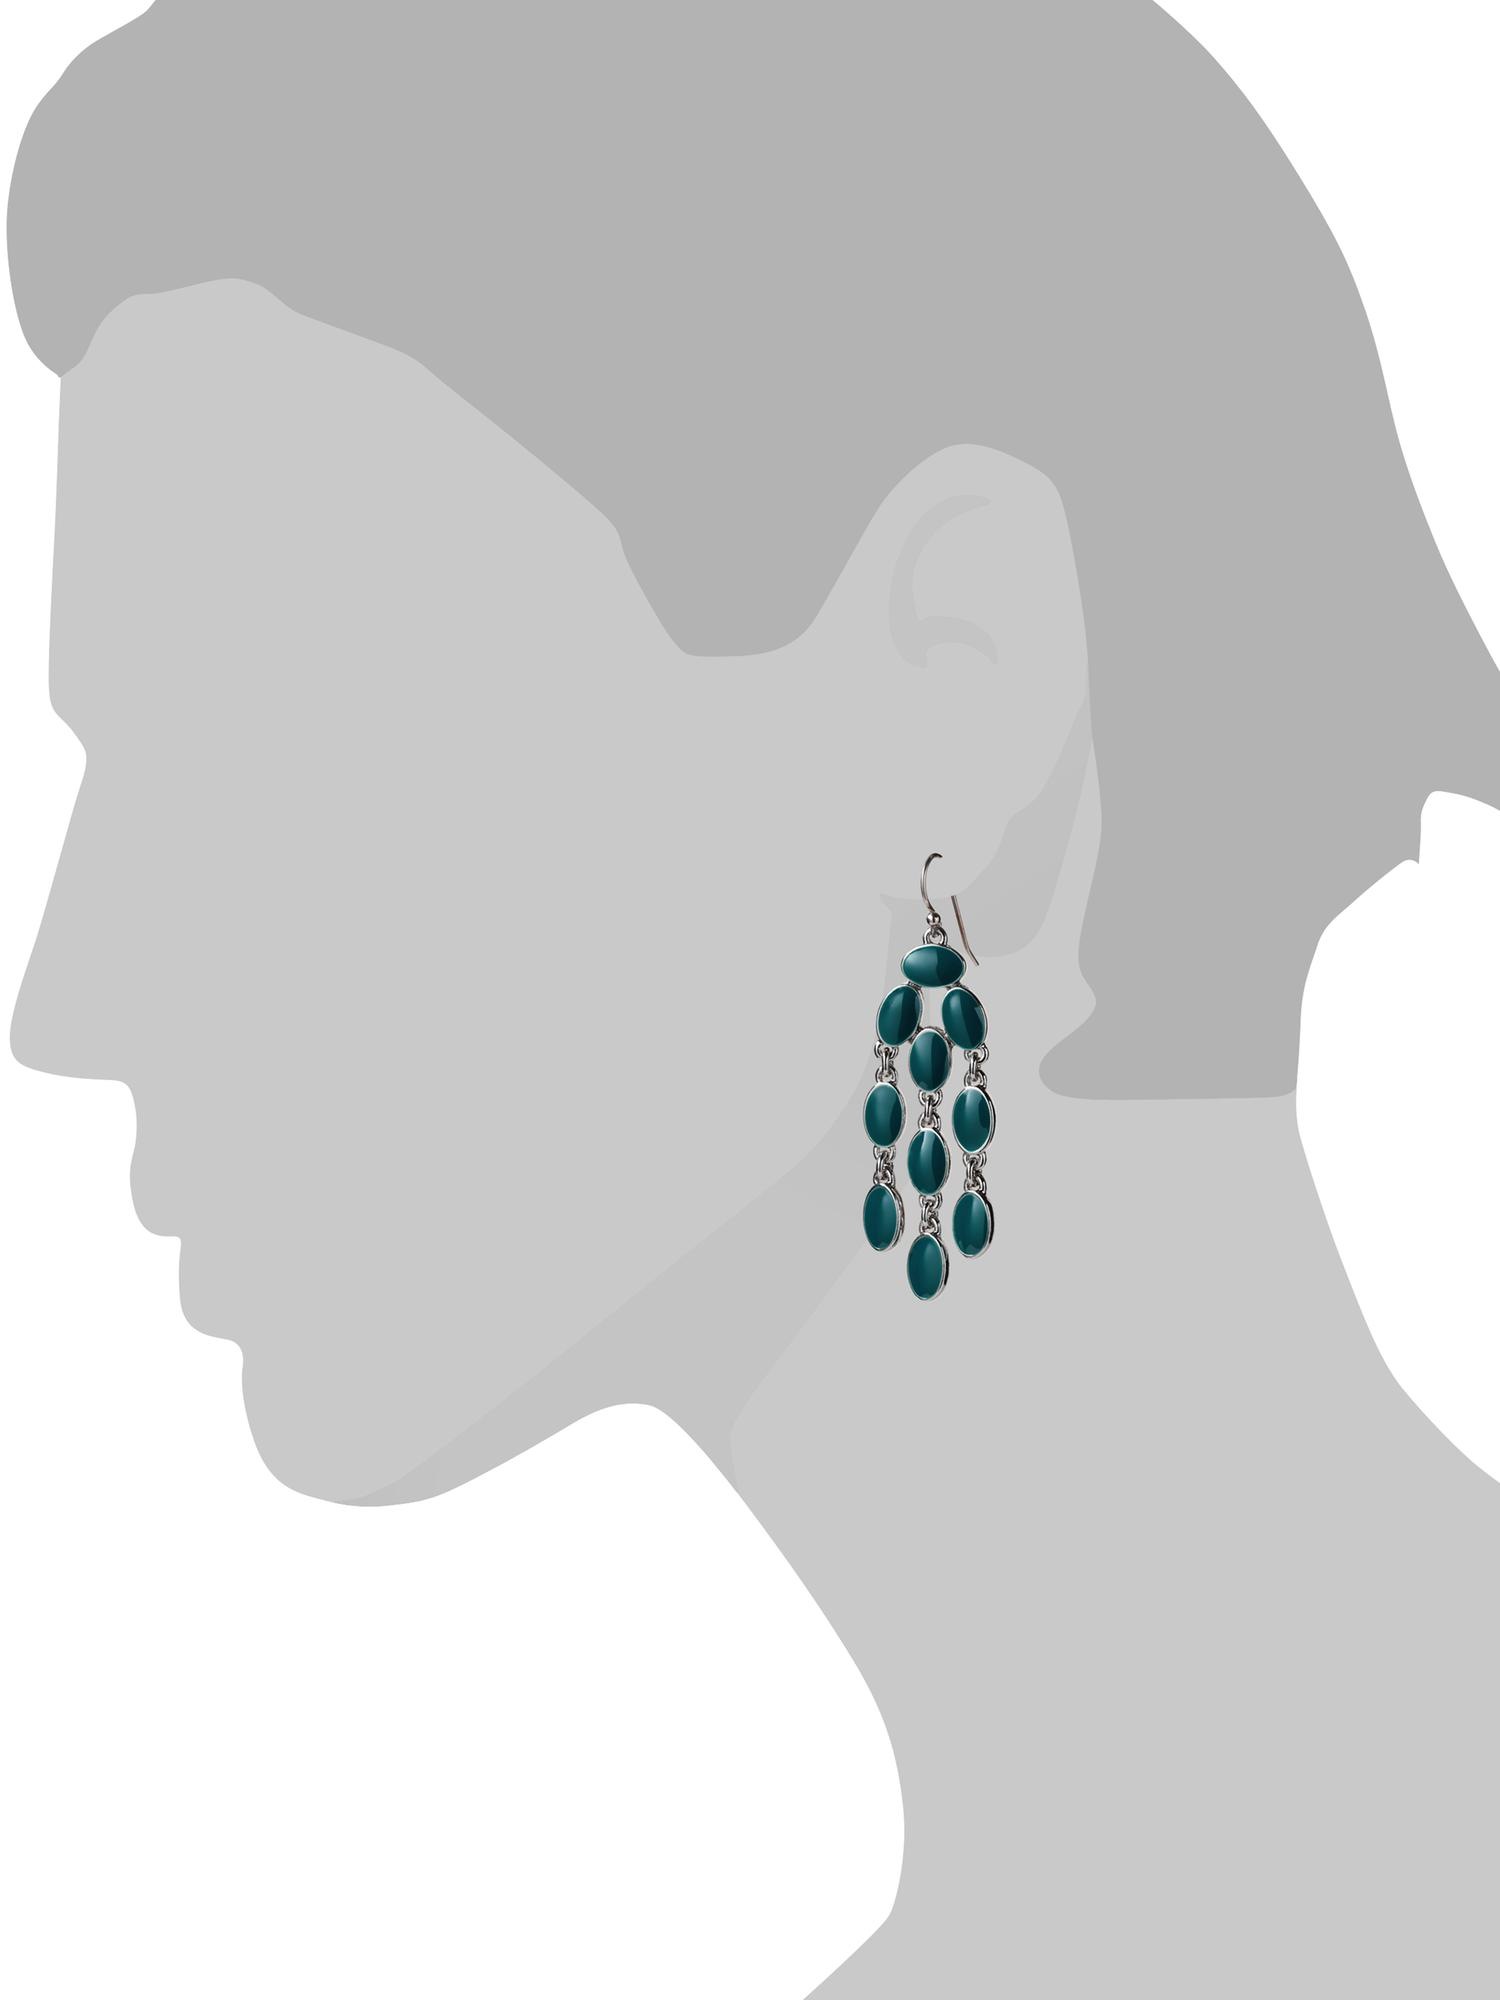 Peacock chandelier earring